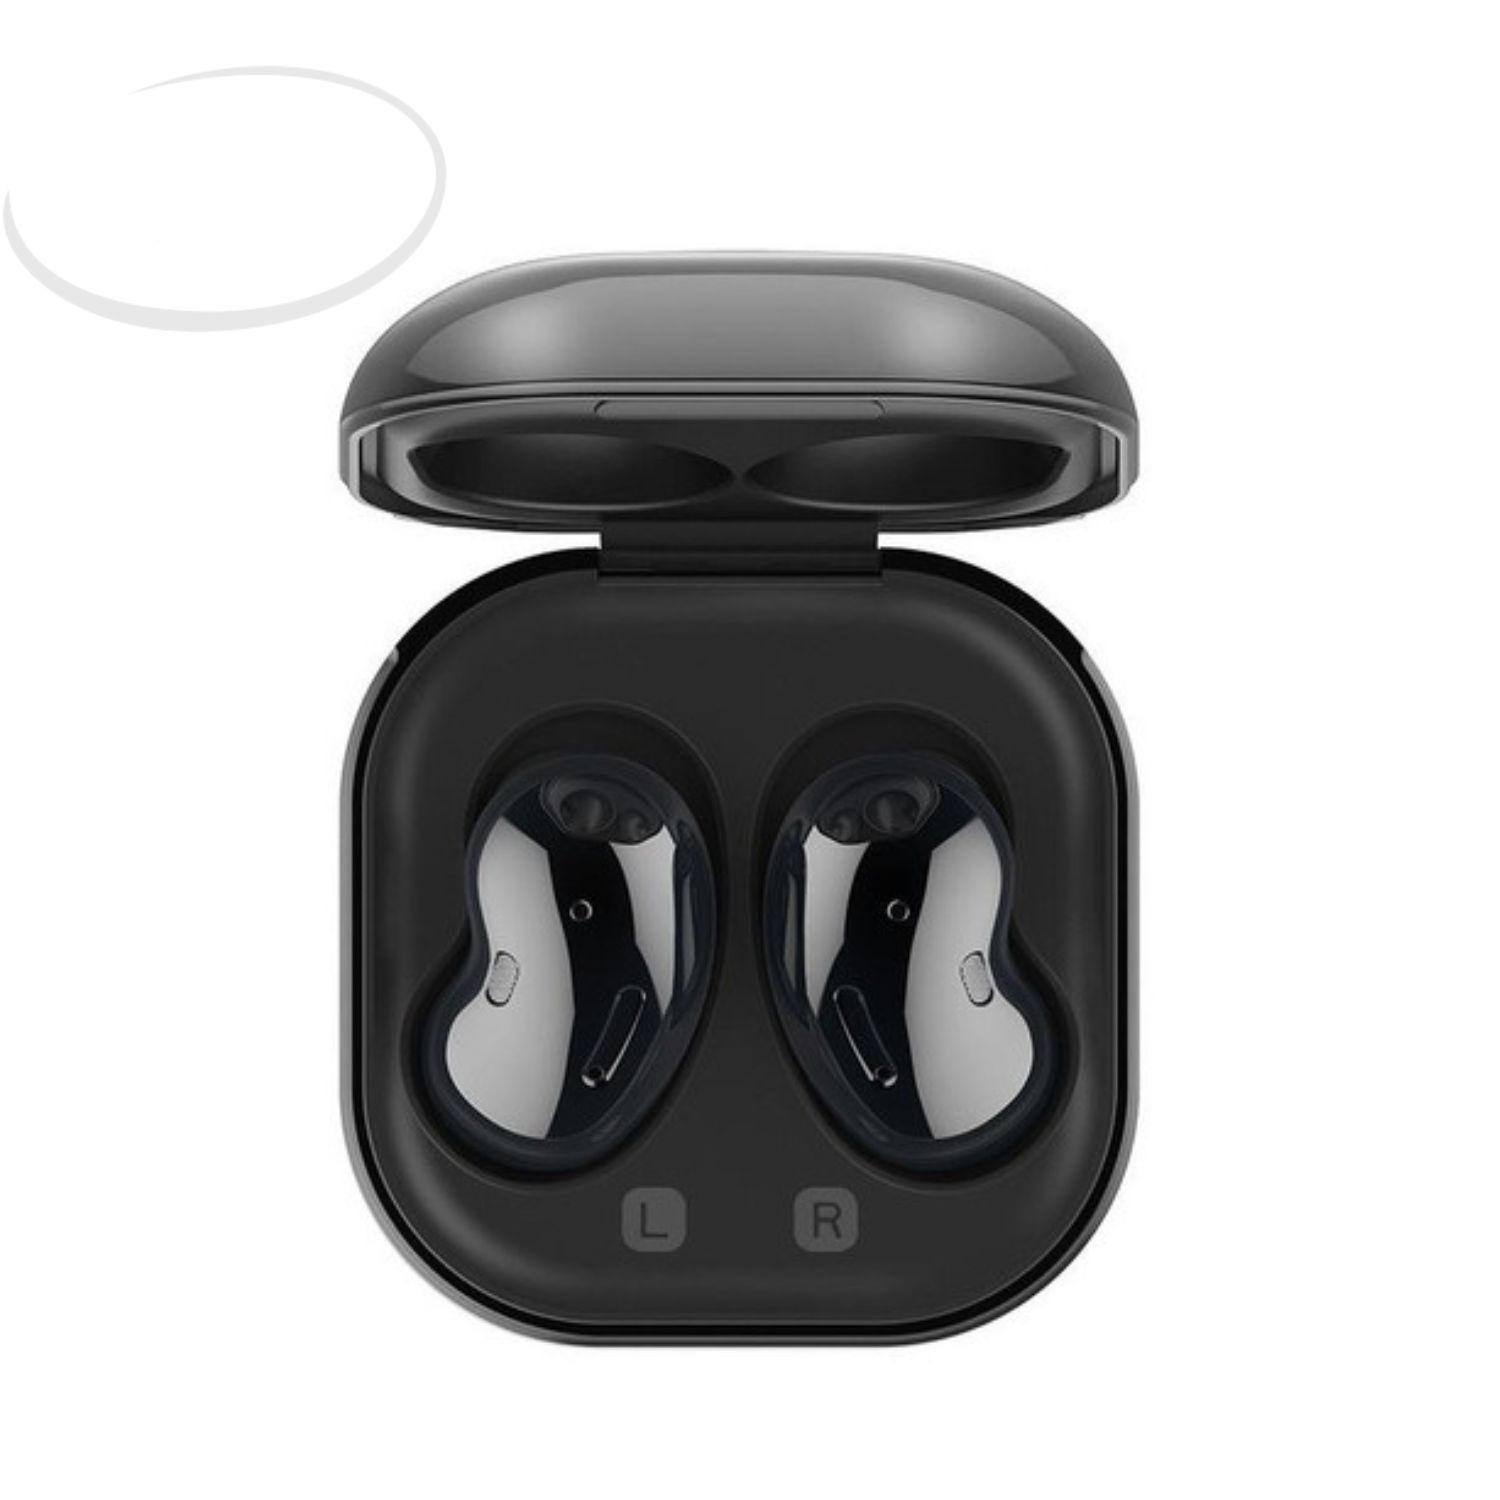 Auriculares On Ear Bluetooth